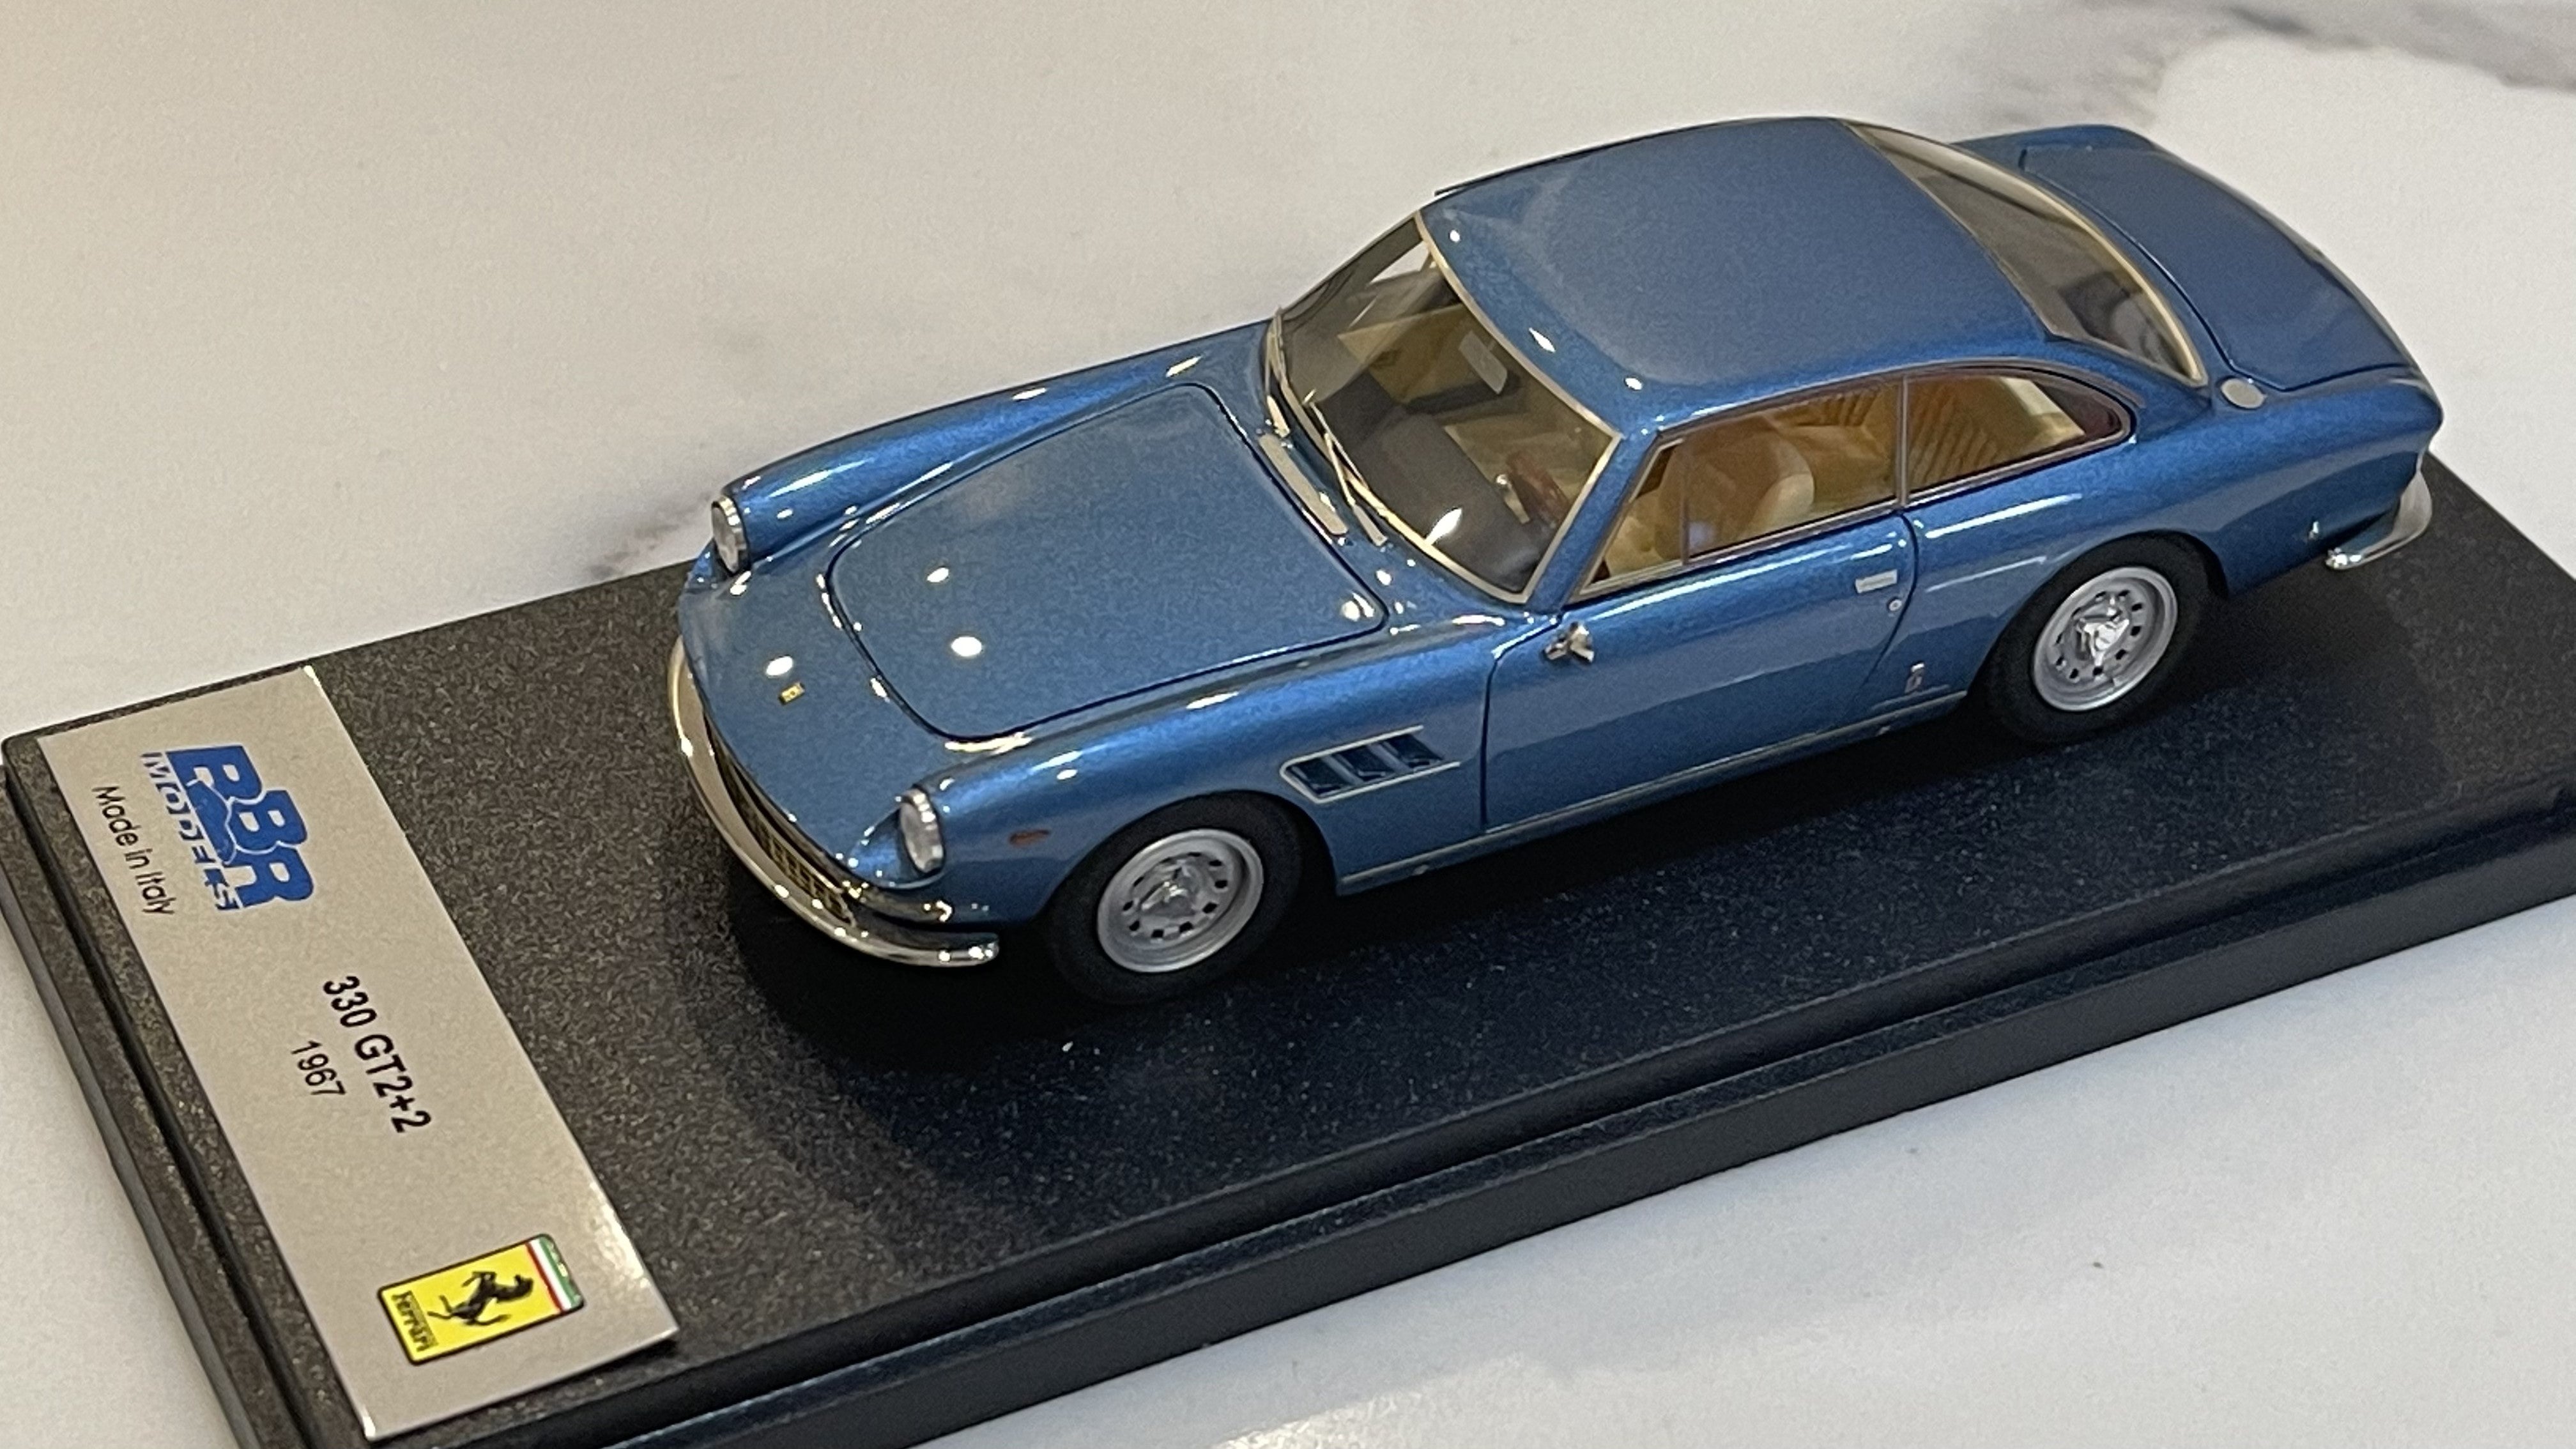 BBR 1/43 Ferrari 330 GT 2+2 1967 Light Blue BBR227A